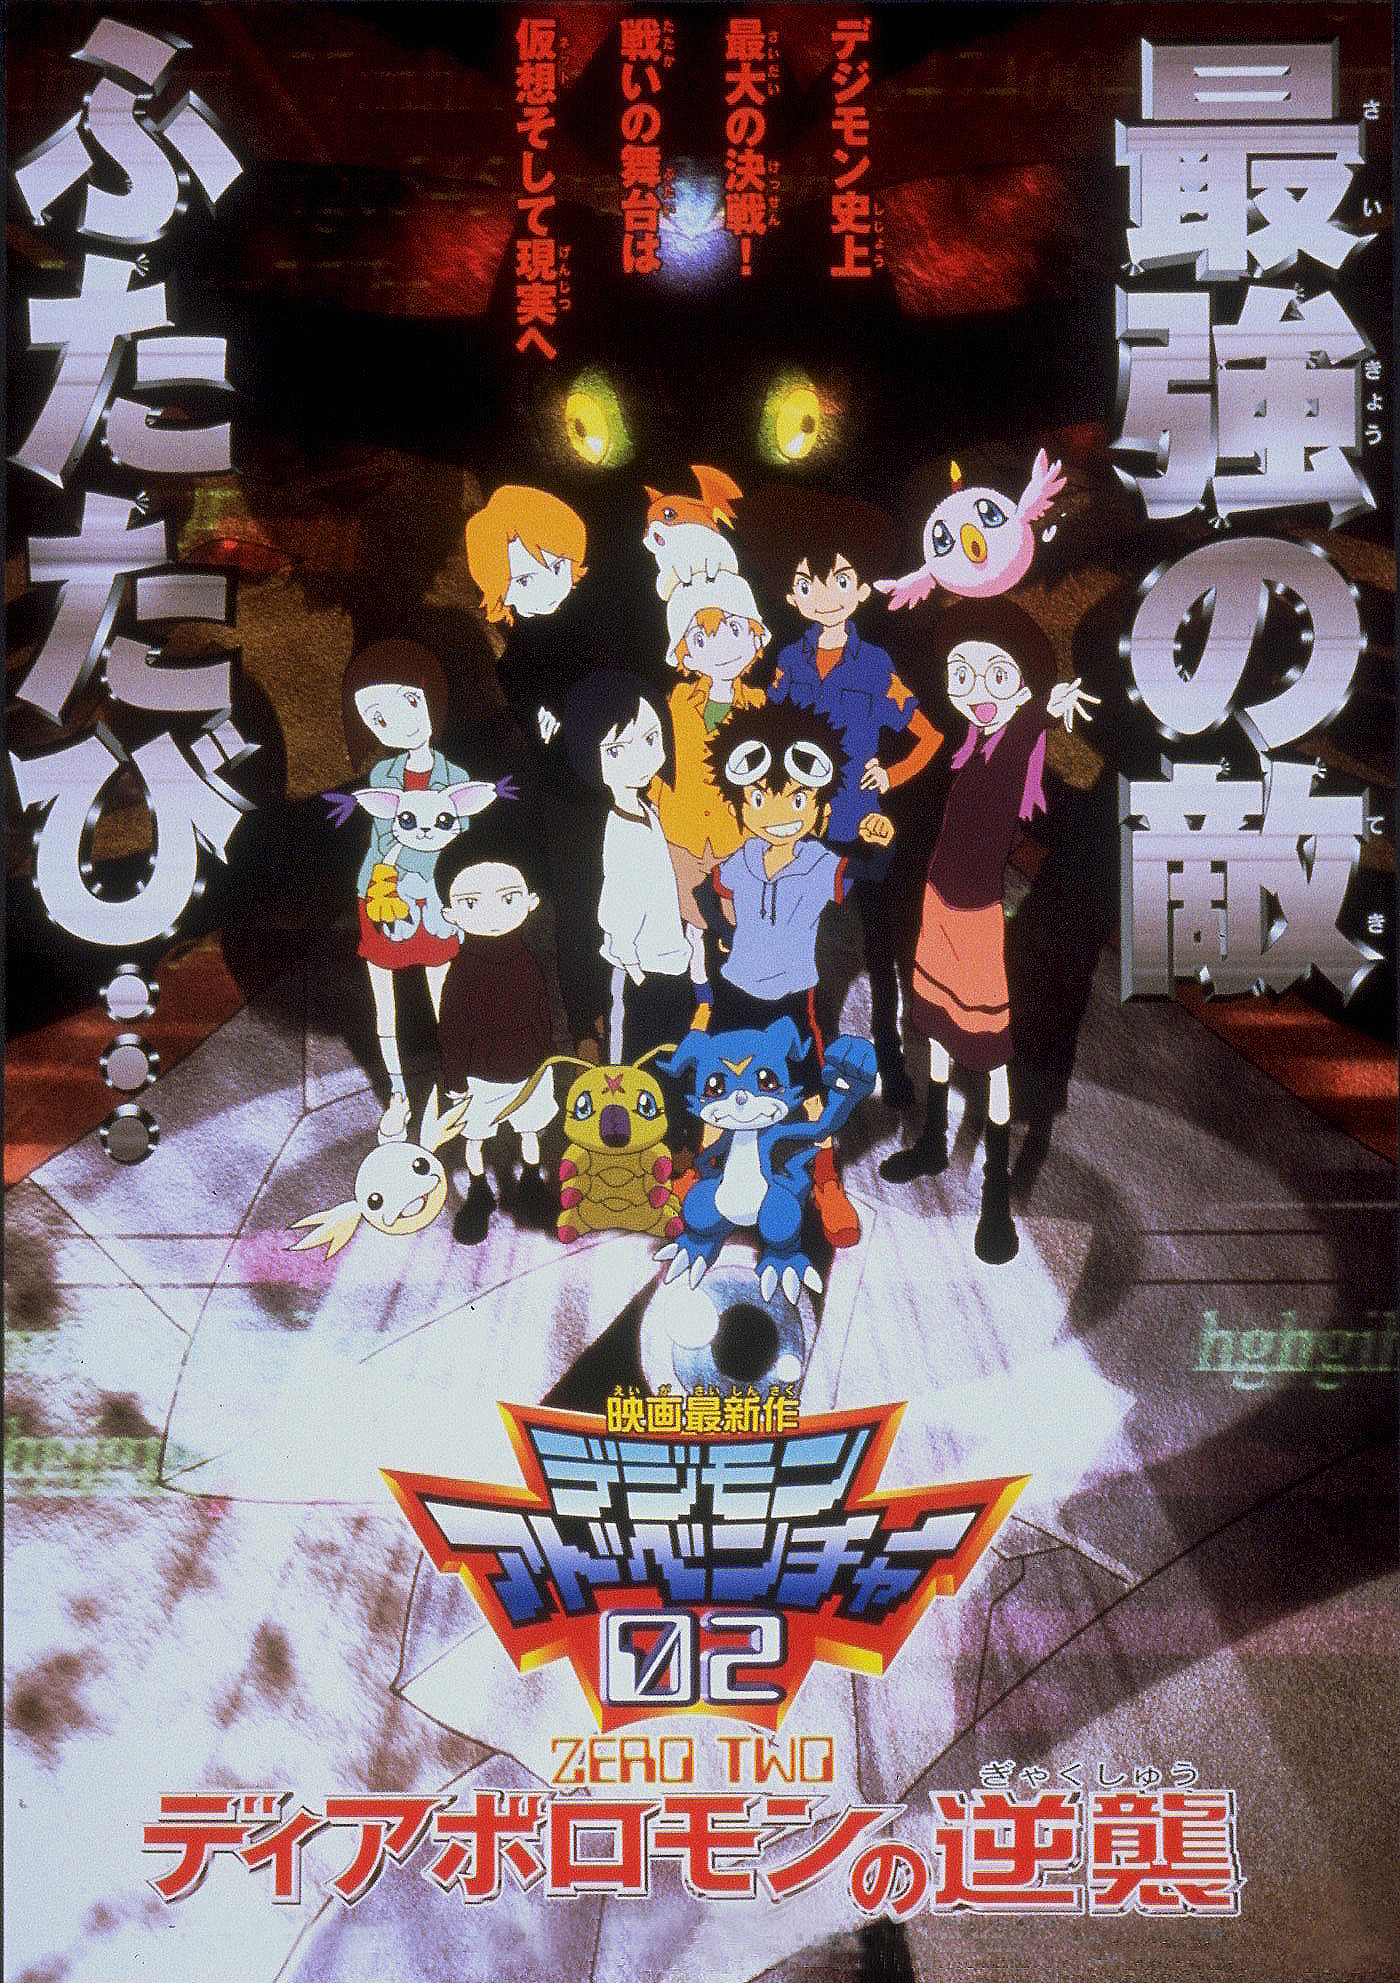 O que assistir antes do filme Digimon Adventure 02: The Beginning